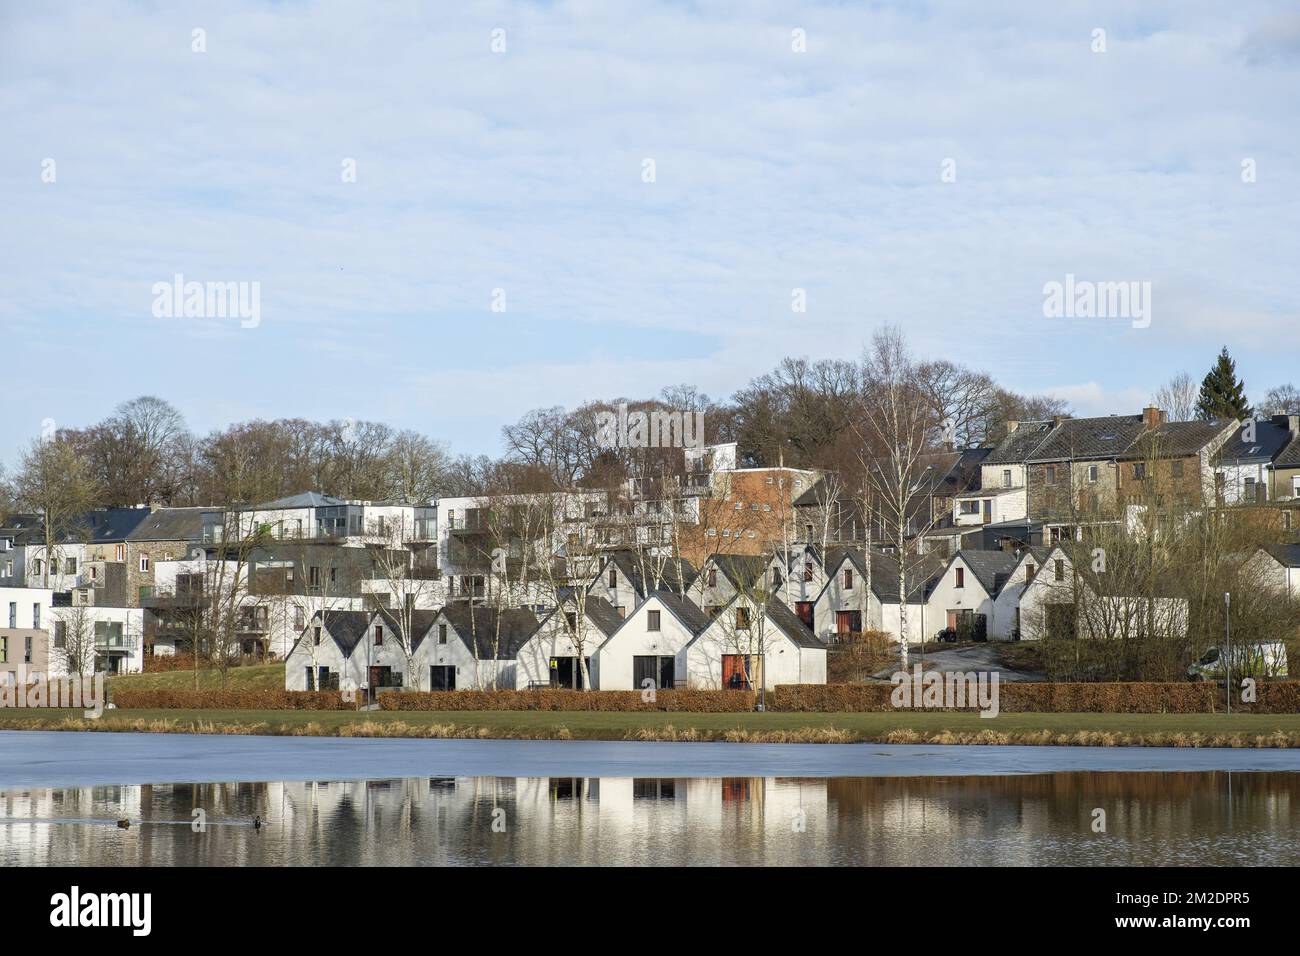 The lake in Vielsalm and touristic housing and infrastructure | Vielsalm et son lac des Doyards avec des structures touristiques et des bungalows de location 14/03/2018 Stock Photo